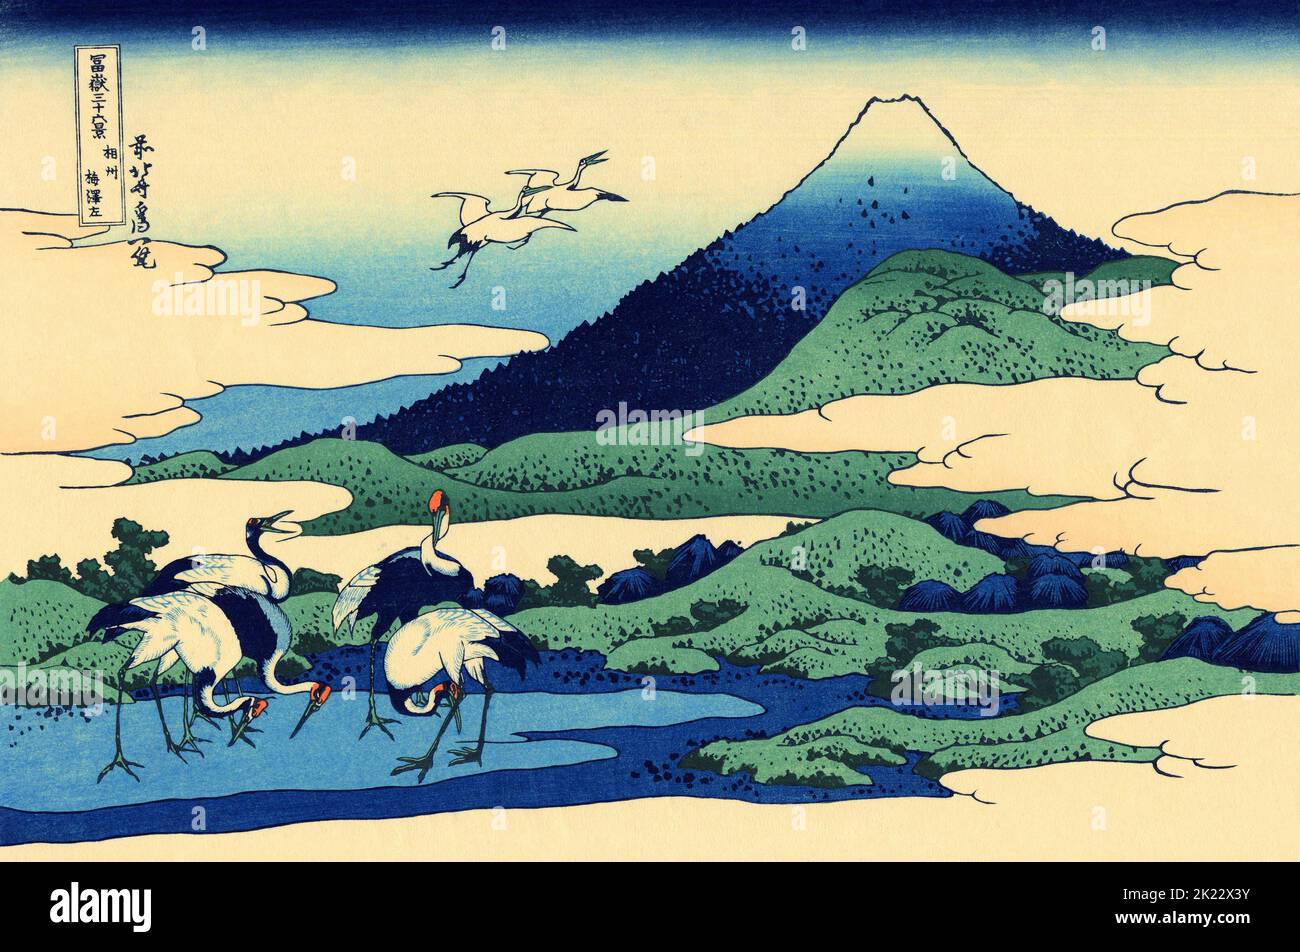 Giappone: «Umegawa nella provincia di Sagami». Ukiyo-e stampa in blocco della serie «trentasei viste del Monte Fuji» di Katsushika Hokusai (31 ottobre 1760 - 10 maggio 1849), c.. 1830. «36 viste del Monte Fuji» è una serie di grandi stampe a blocchi di legno realizzate dall’artista Katsushika Hokusai. La serie raffigura il Monte Fuji in stagioni e condizioni meteorologiche diverse da una varietà di luoghi e distanze. Si compone di 46 stampe create tra il 1826 e il 1833. I primi 36 sono stati inclusi nella pubblicazione originale e, a causa della loro popolarità, altri 10 sono stati aggiunti dopo la pubblicazione originale. Foto Stock